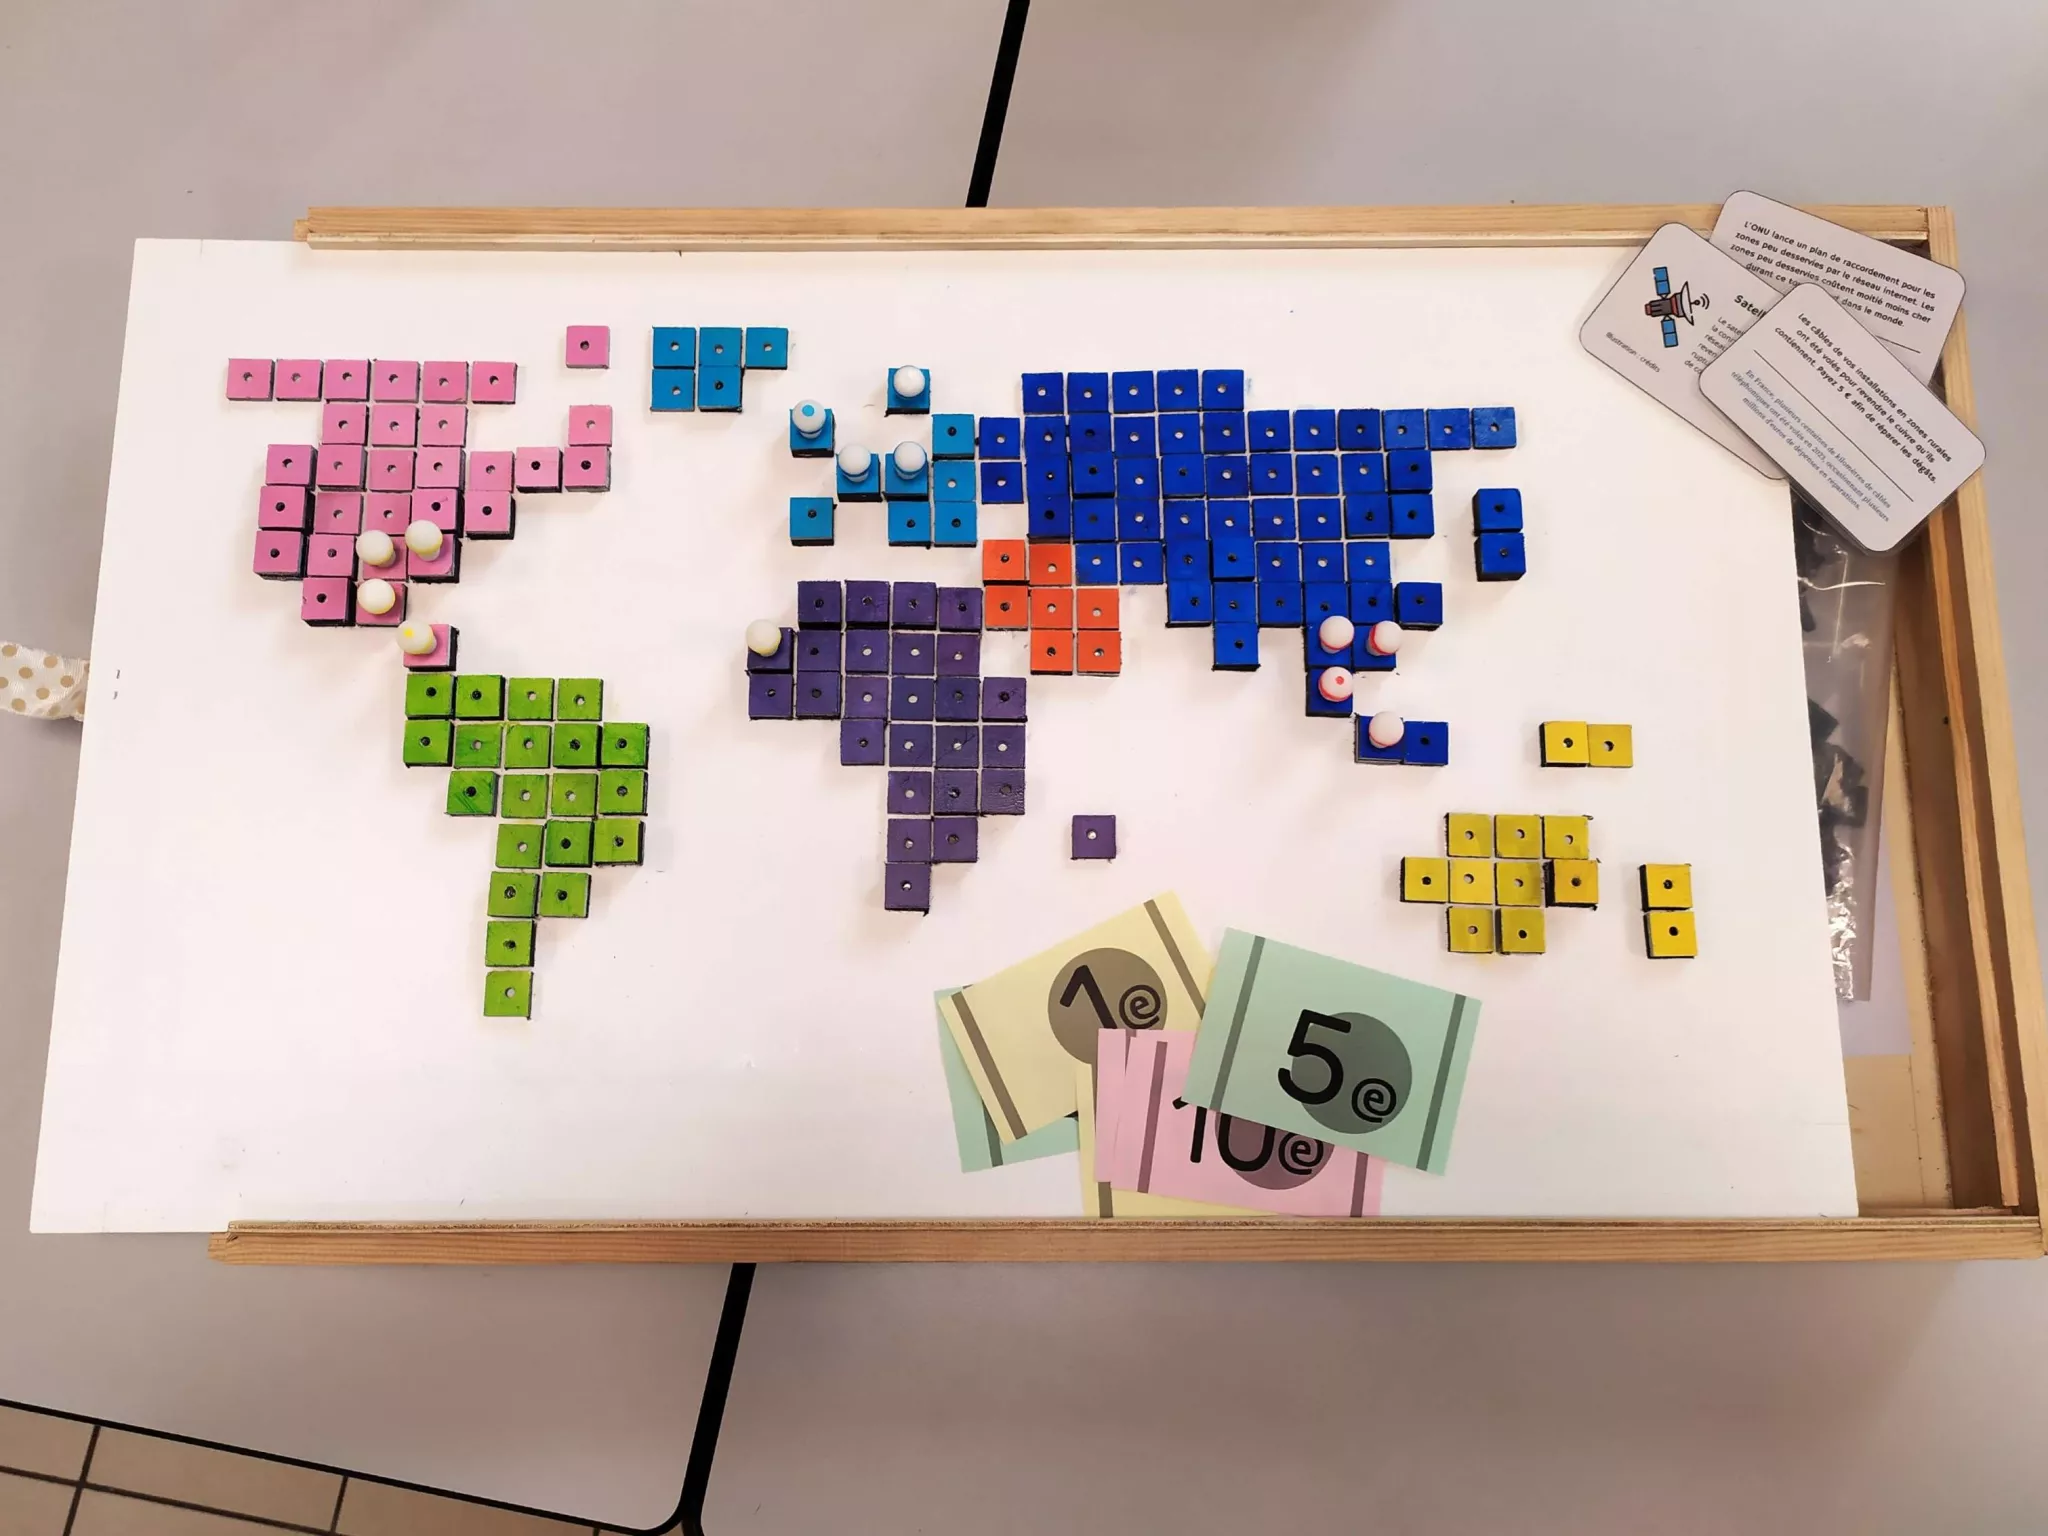 Une photo du jeu fini. On y voit le plateau de jeu avec des continents faits de tuiles carrées et peintes de différentes couleurs. Des pions sont placés sur certaines tuiles et des cartes et faux billets sont sortis de la boîte entrouverte.